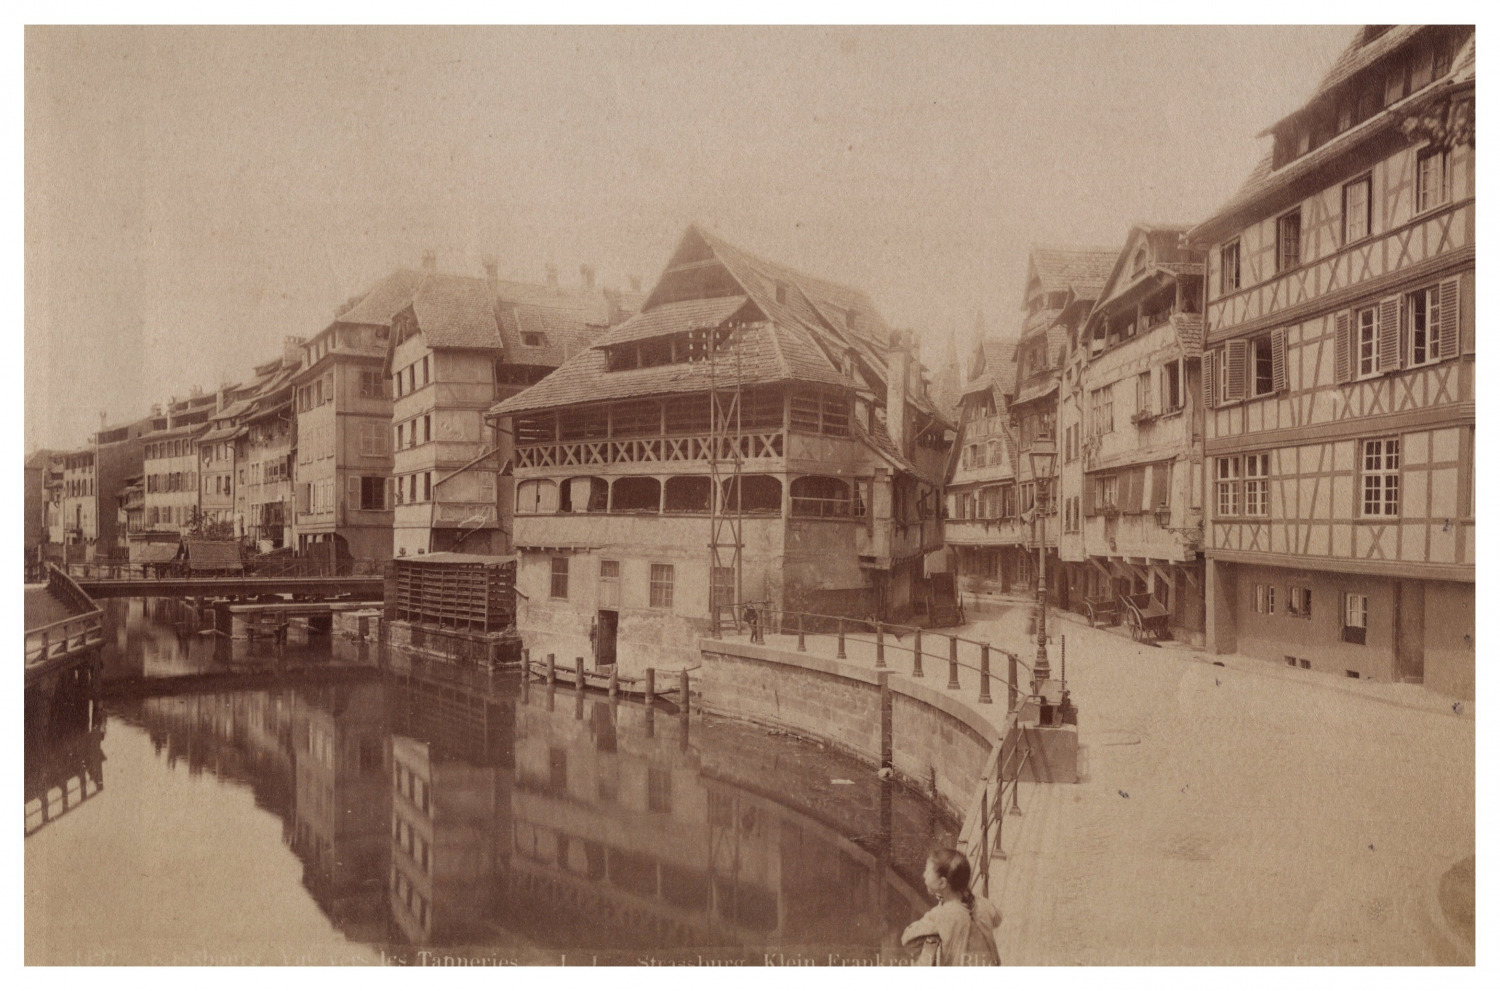 France, Strasbourg, Petite France, vintage print, ca.1880 vintage print print print